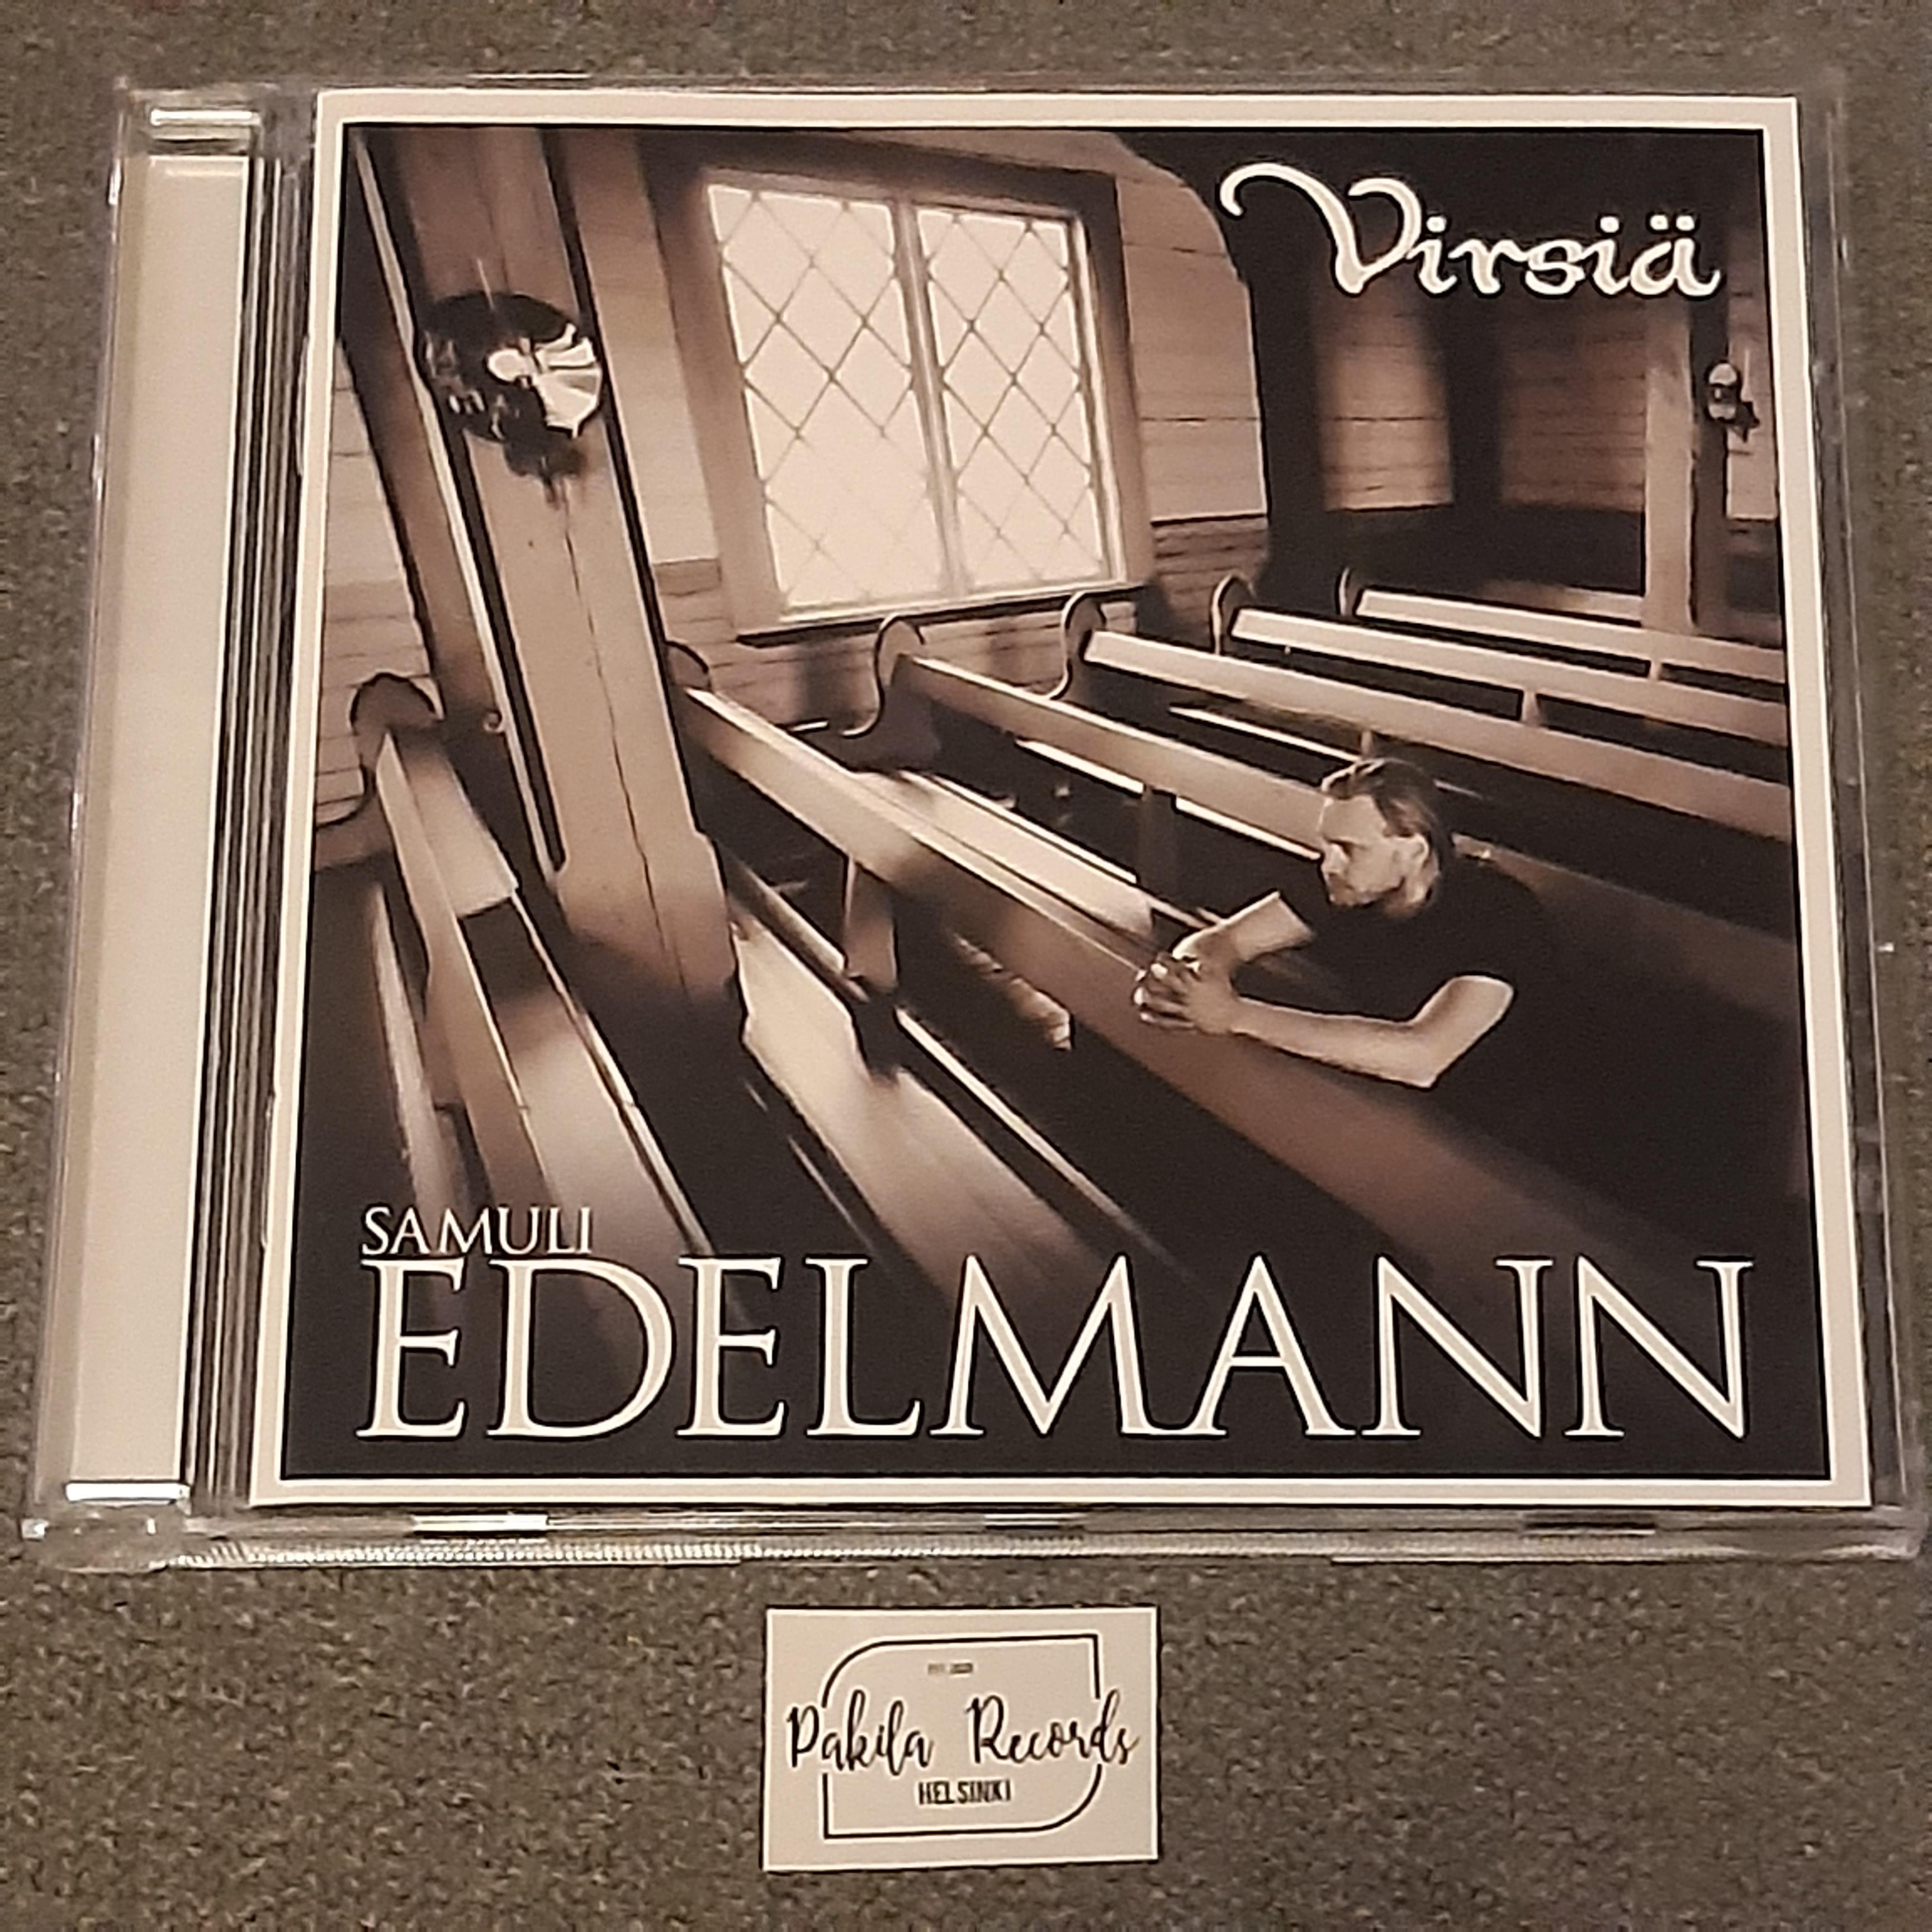 Samuli Edelmann - Virsiä - CD (käytetty)